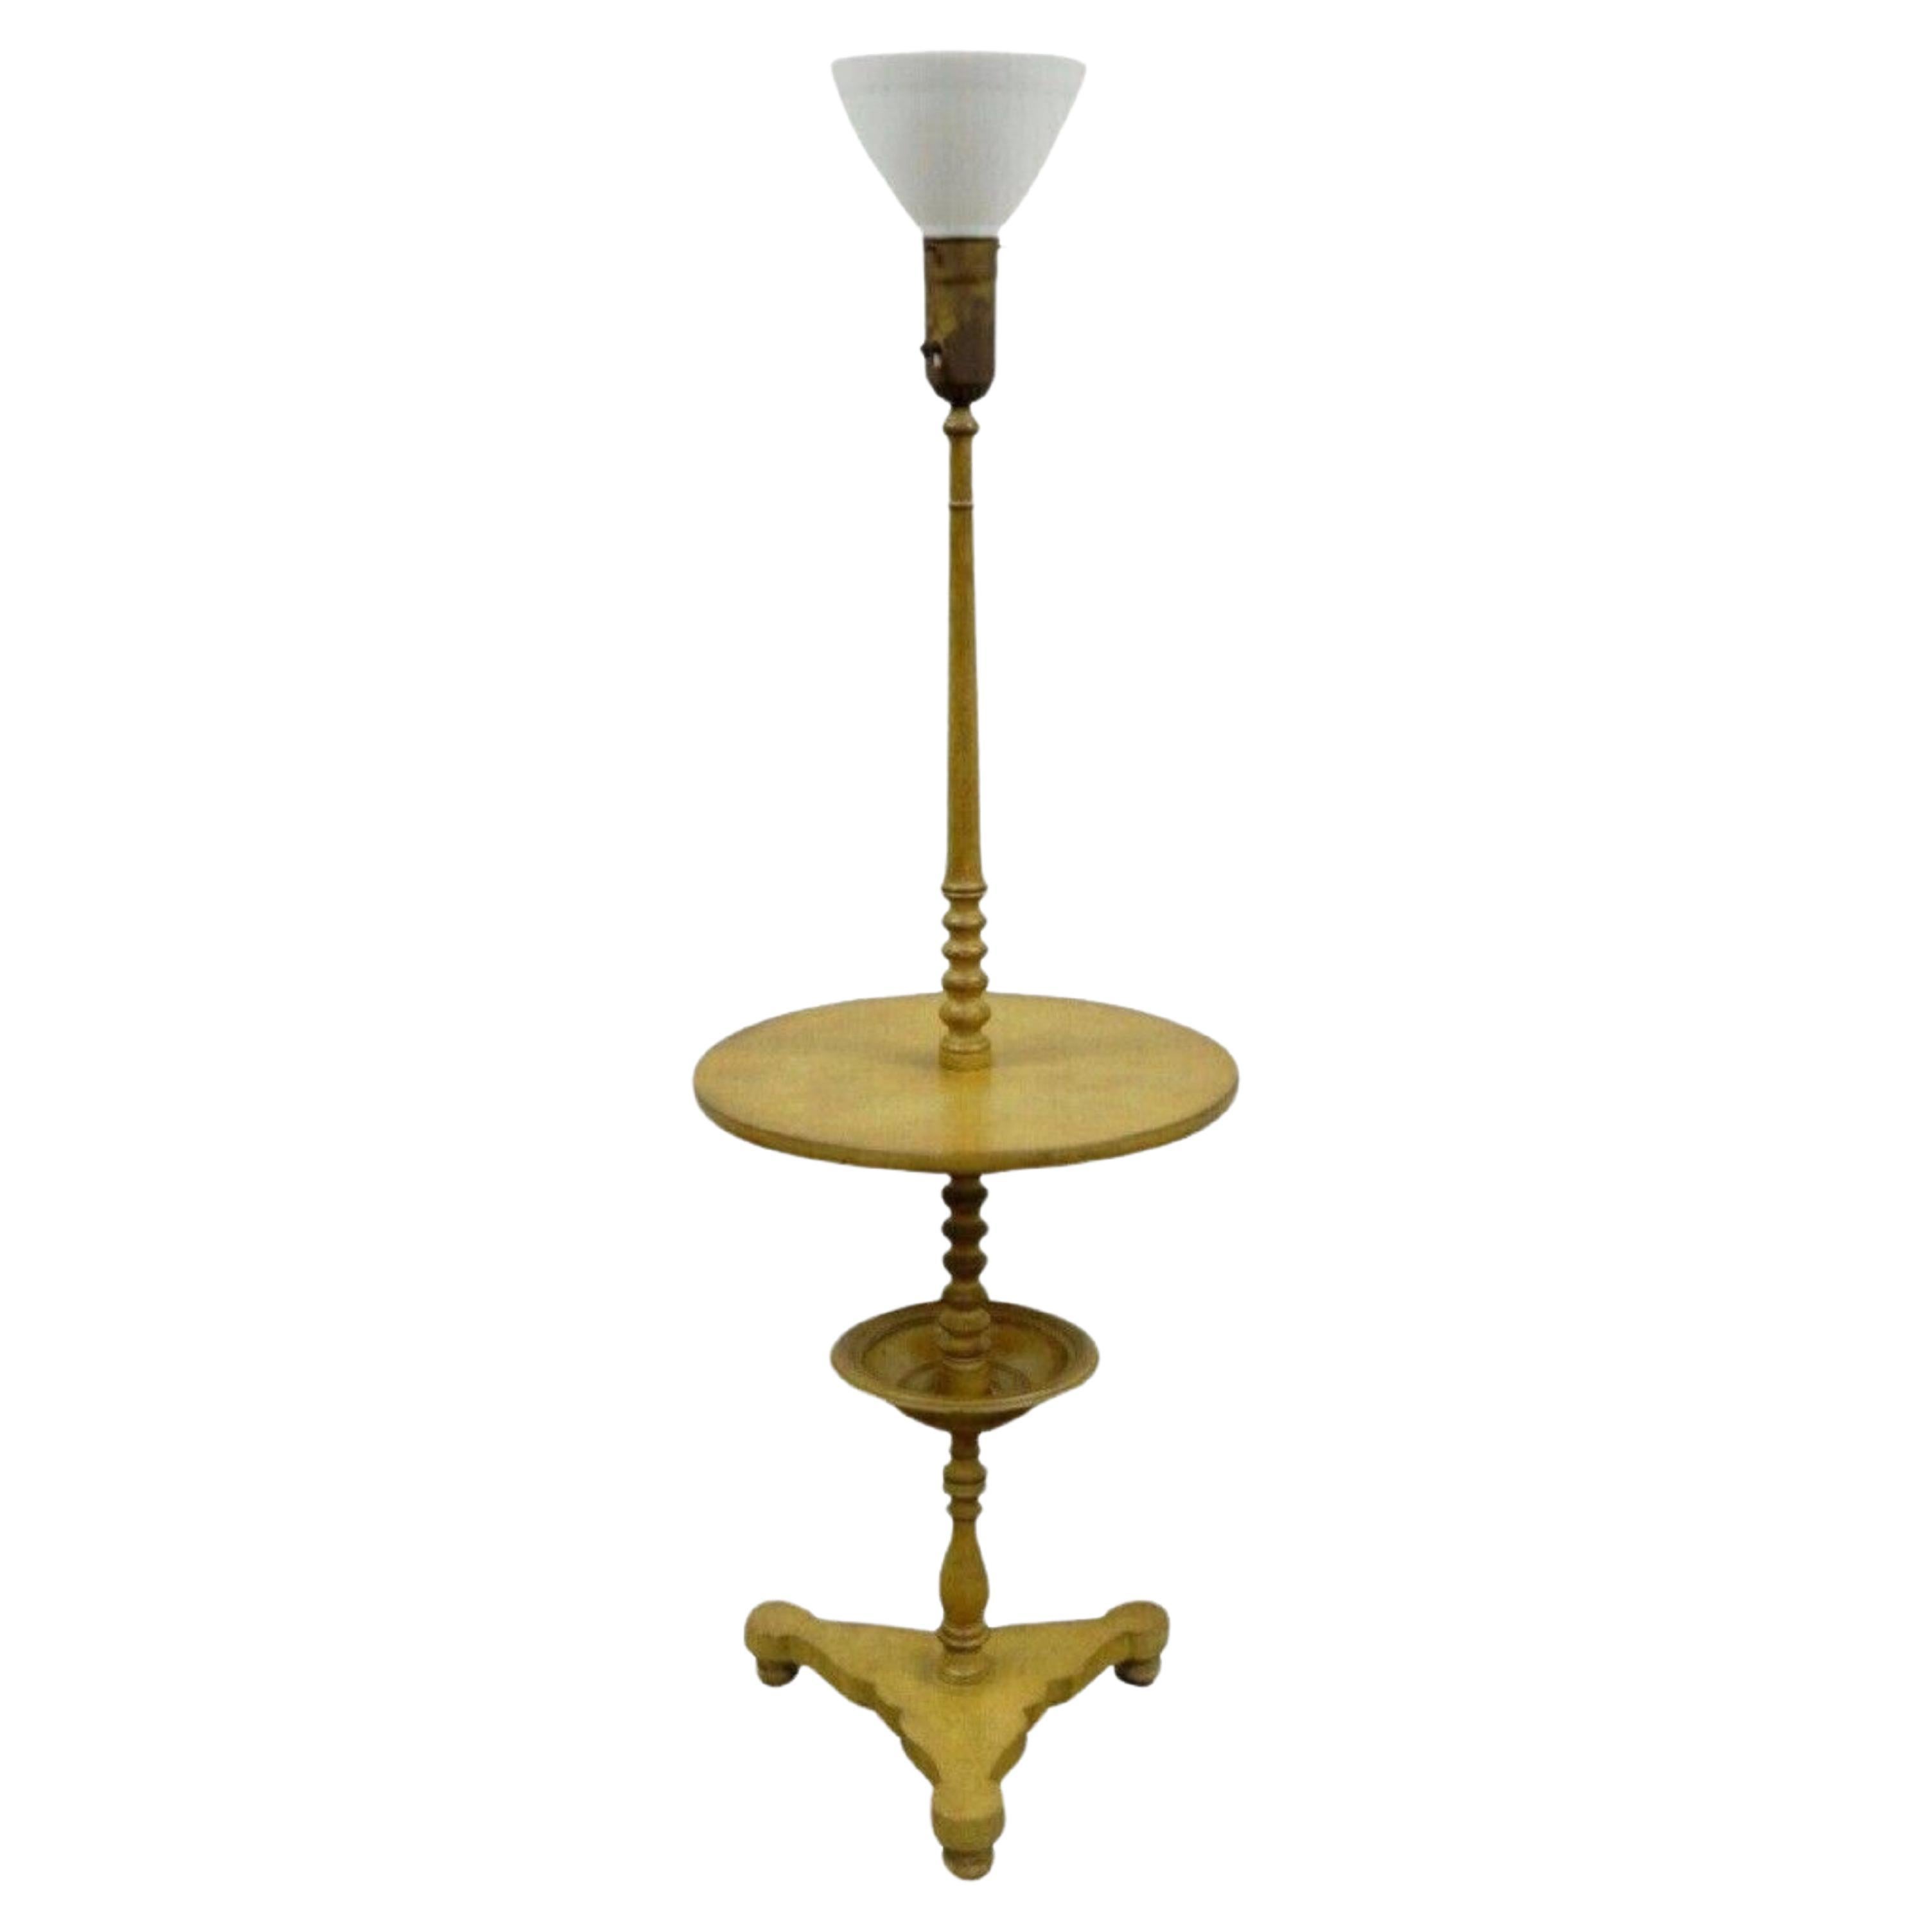 Vintage Biedermeier Style Turn Carved Wood Candlestick Side Table Floor Lamp